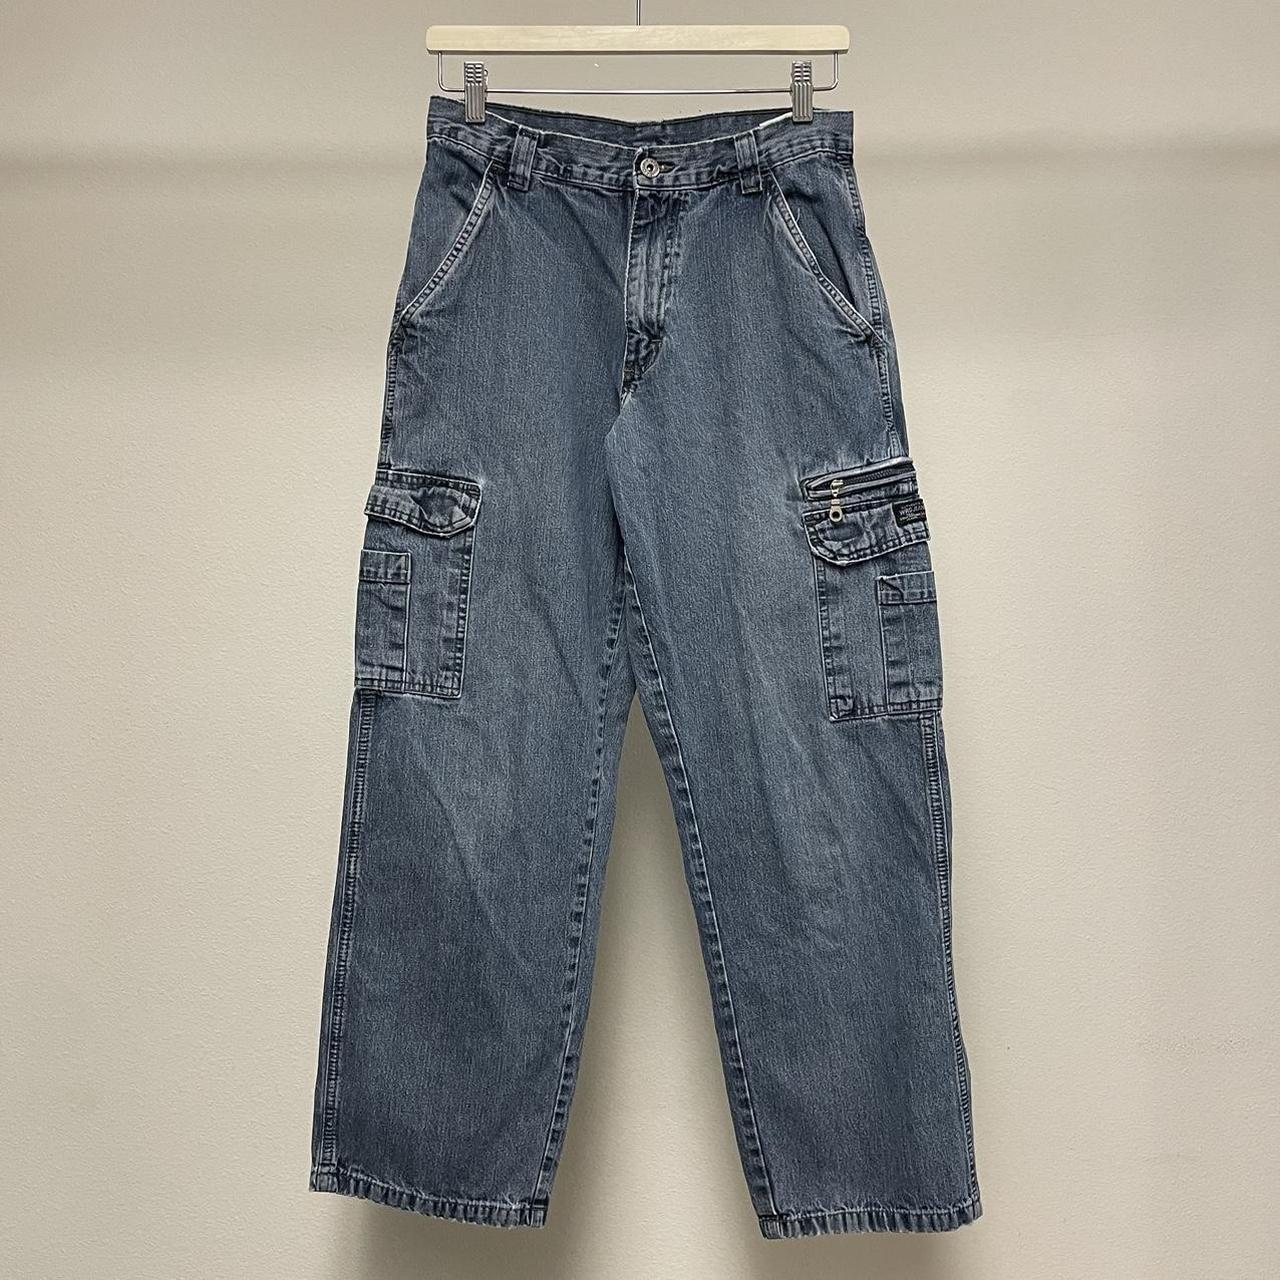 Vintage Wrangler cargo jeans 2000s y2k faded blue... - Depop